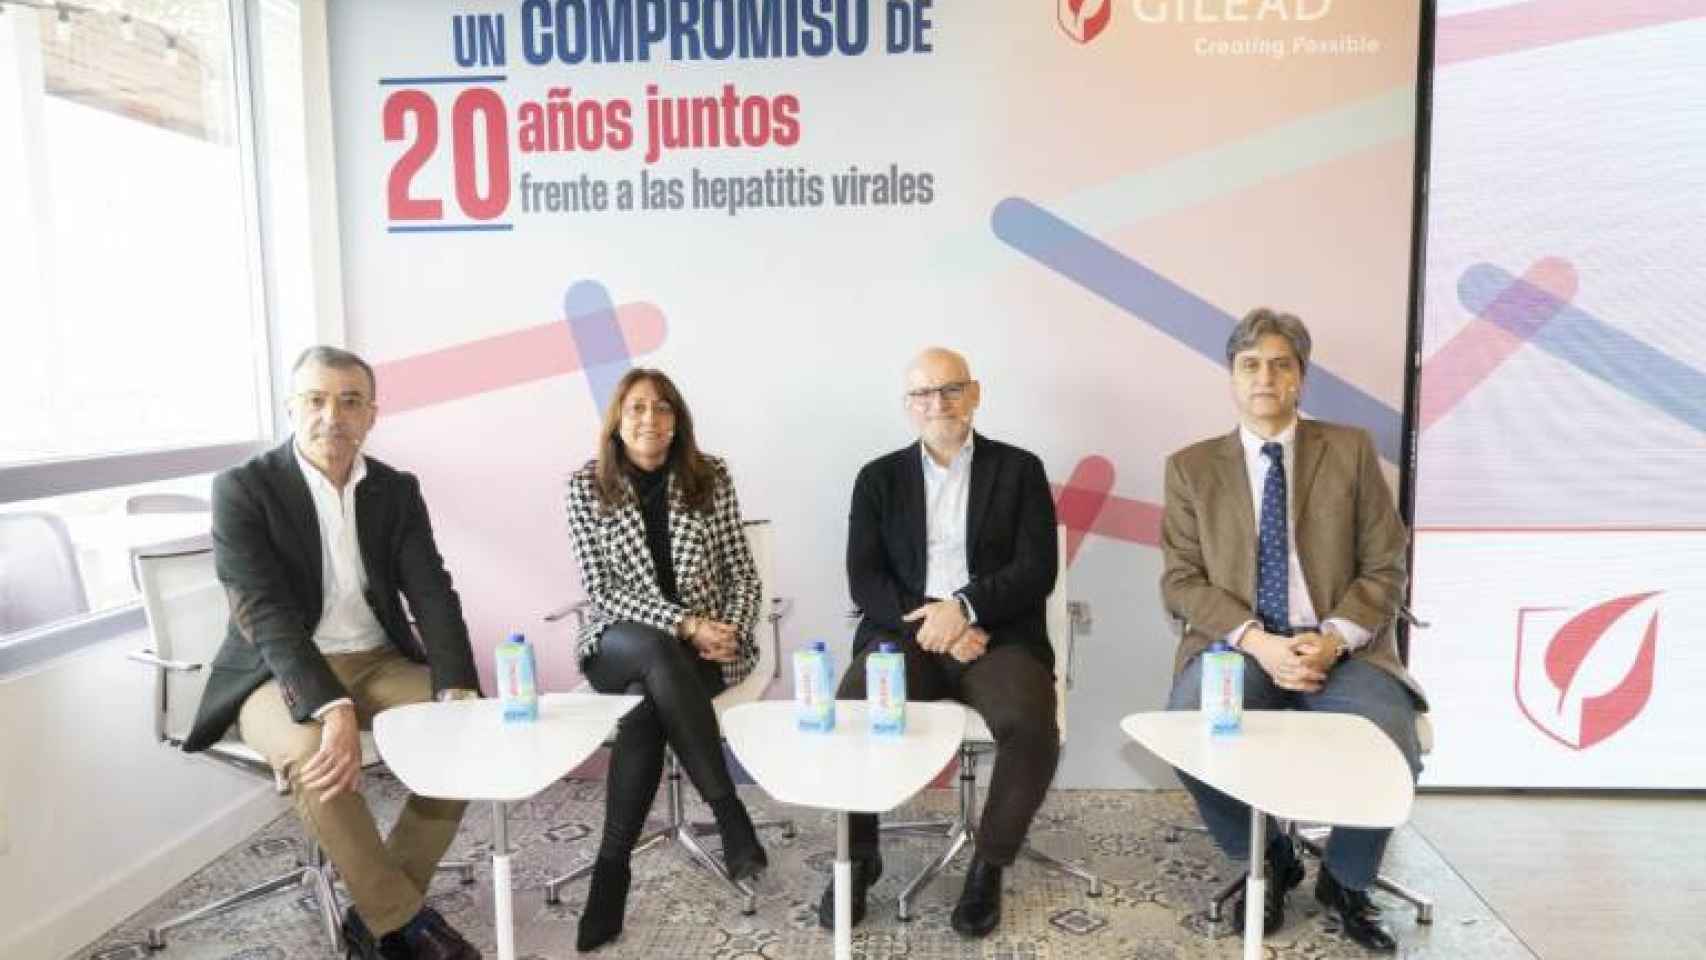 España puede convertirse en uno de los primeros países en conseguir eliminar la hepatitis C